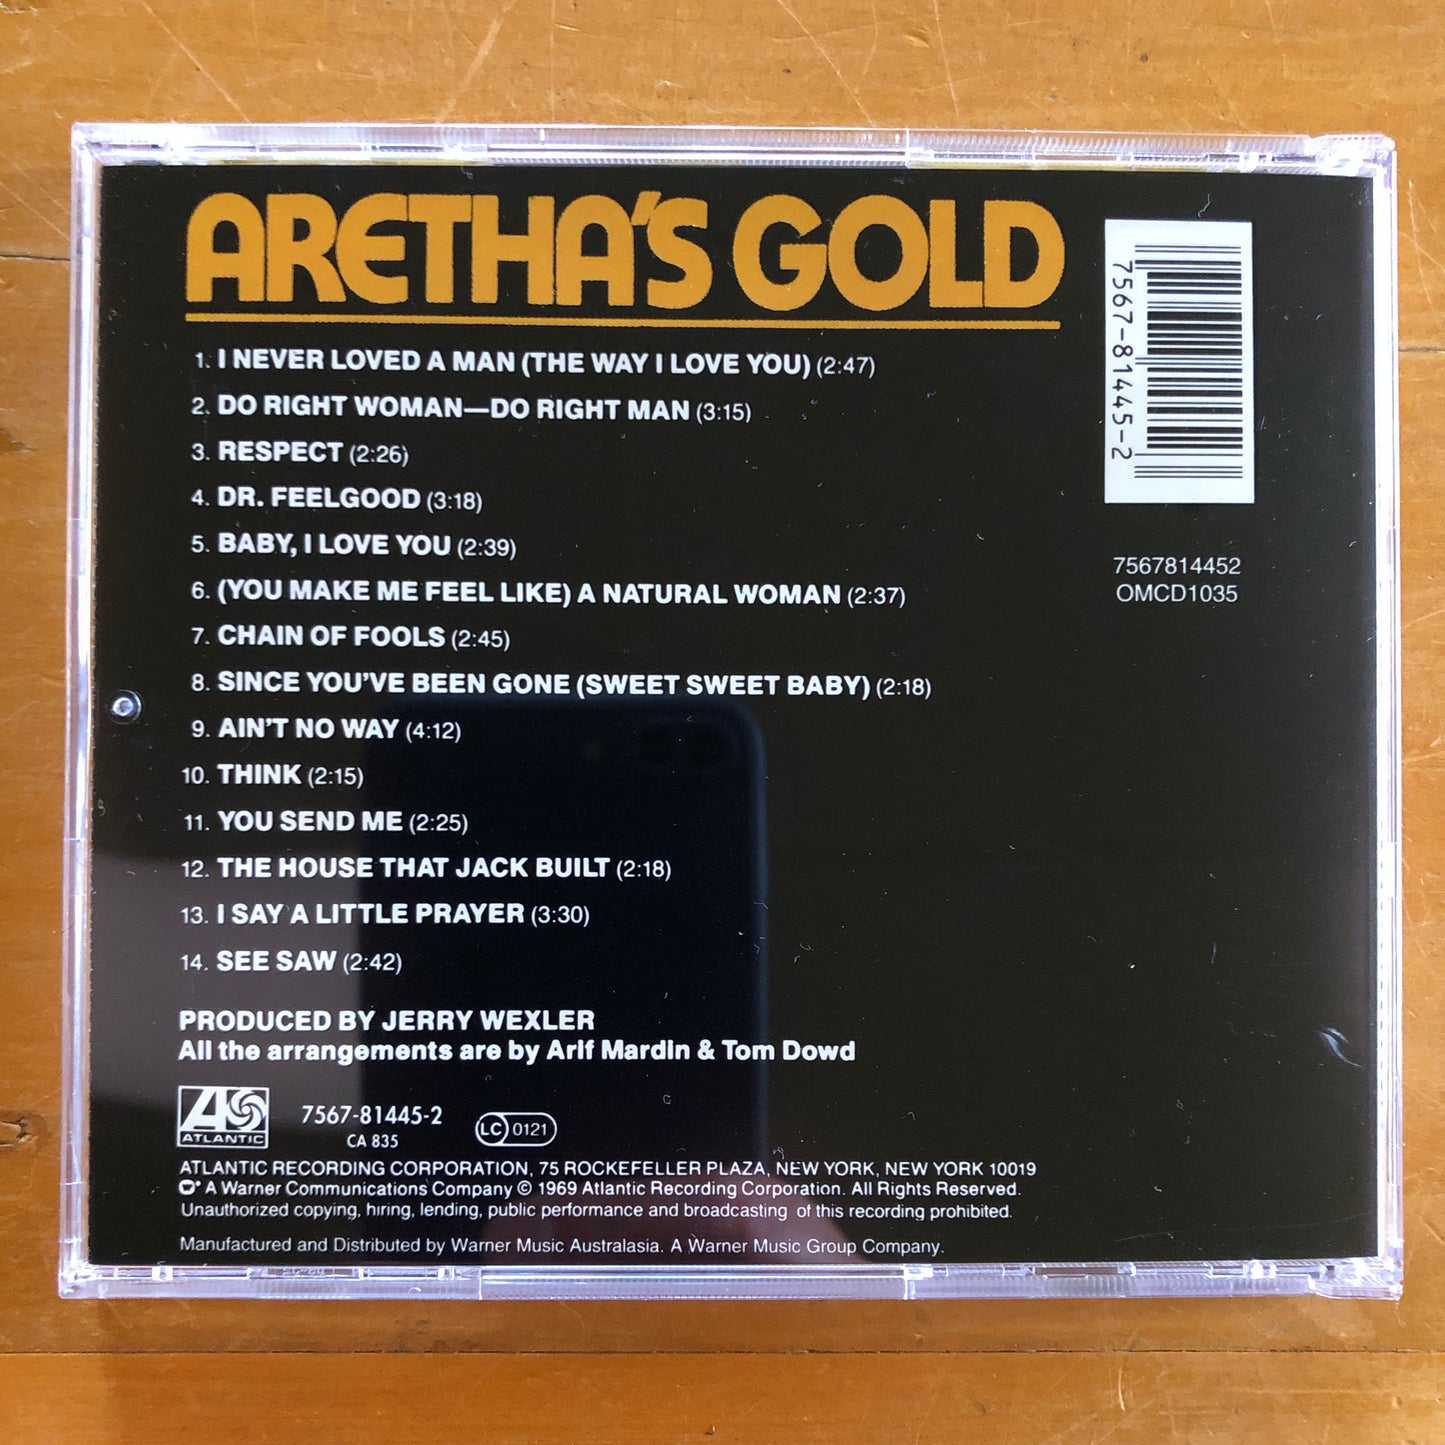 Aretha Franklin - Aretha's Gold (CD)